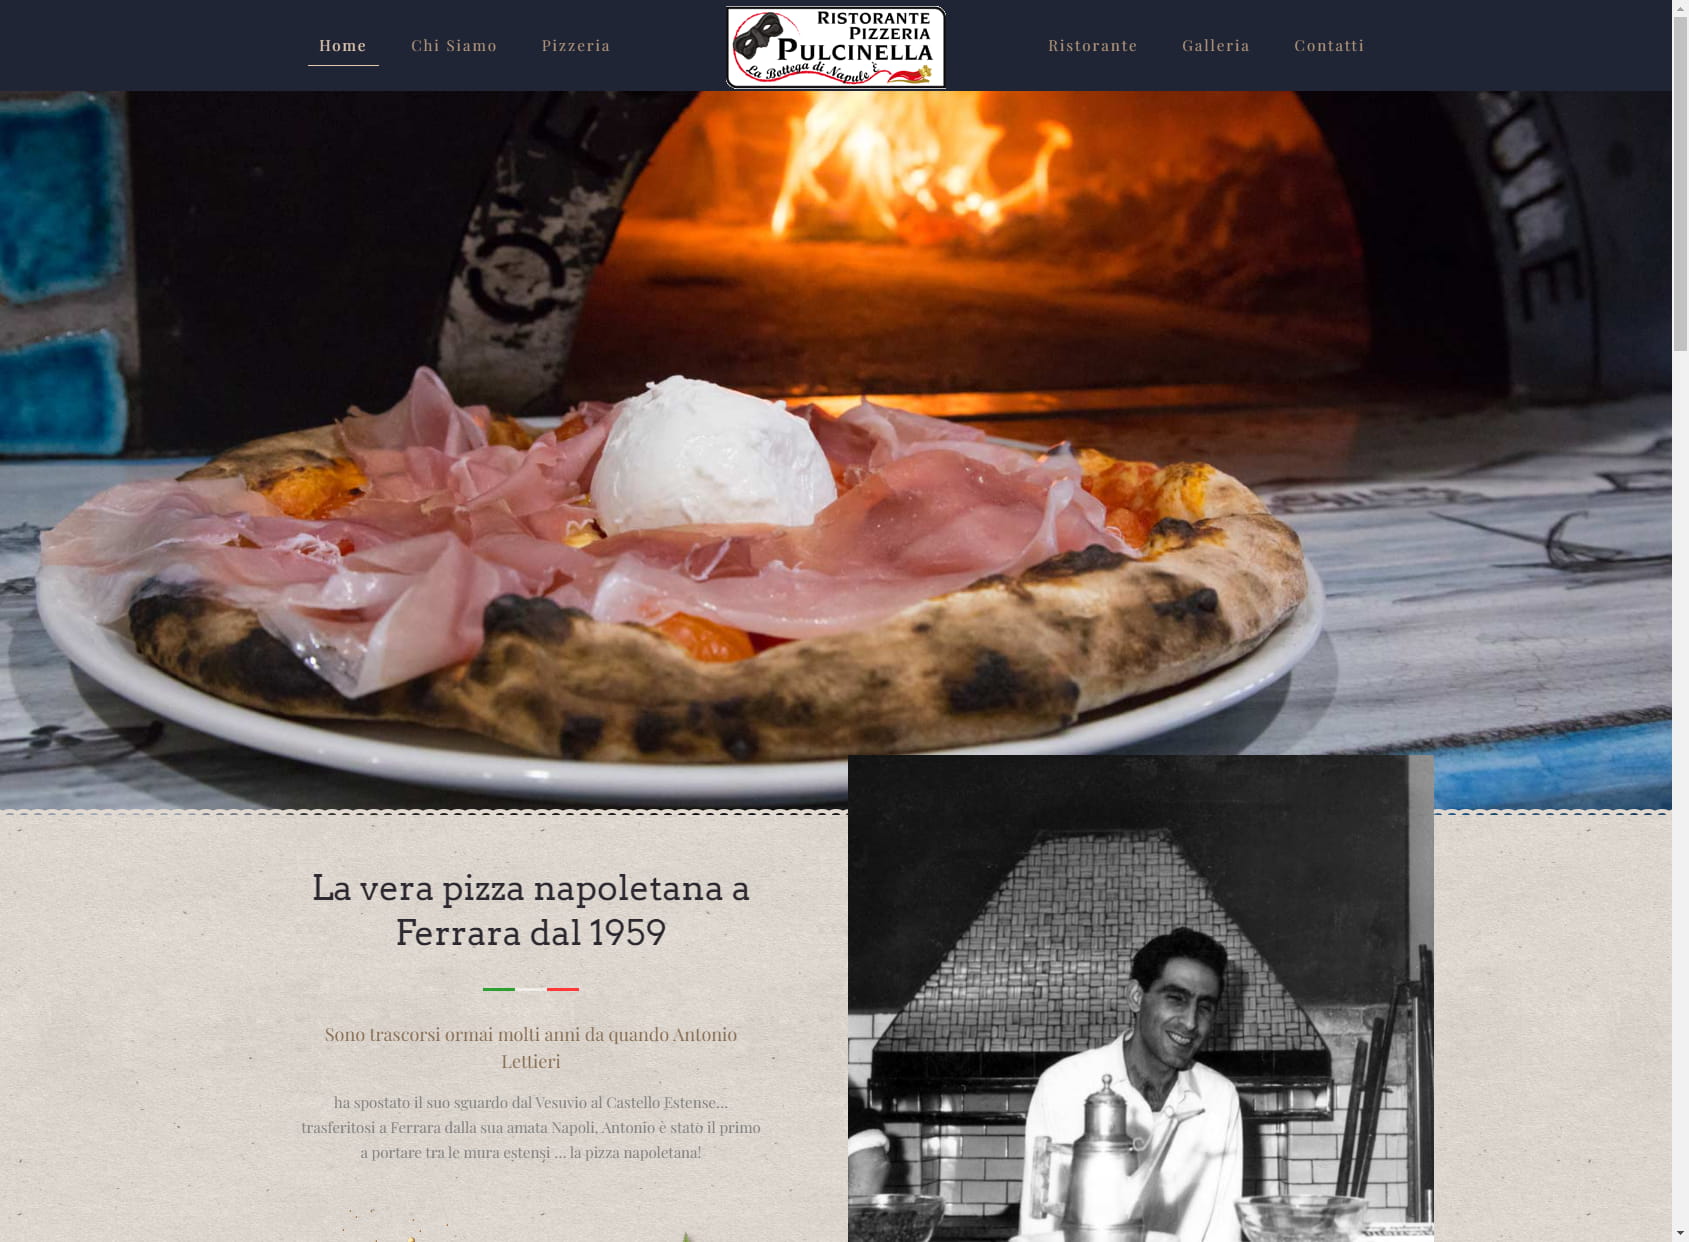 Ristorante Pizzeria Pulcinella